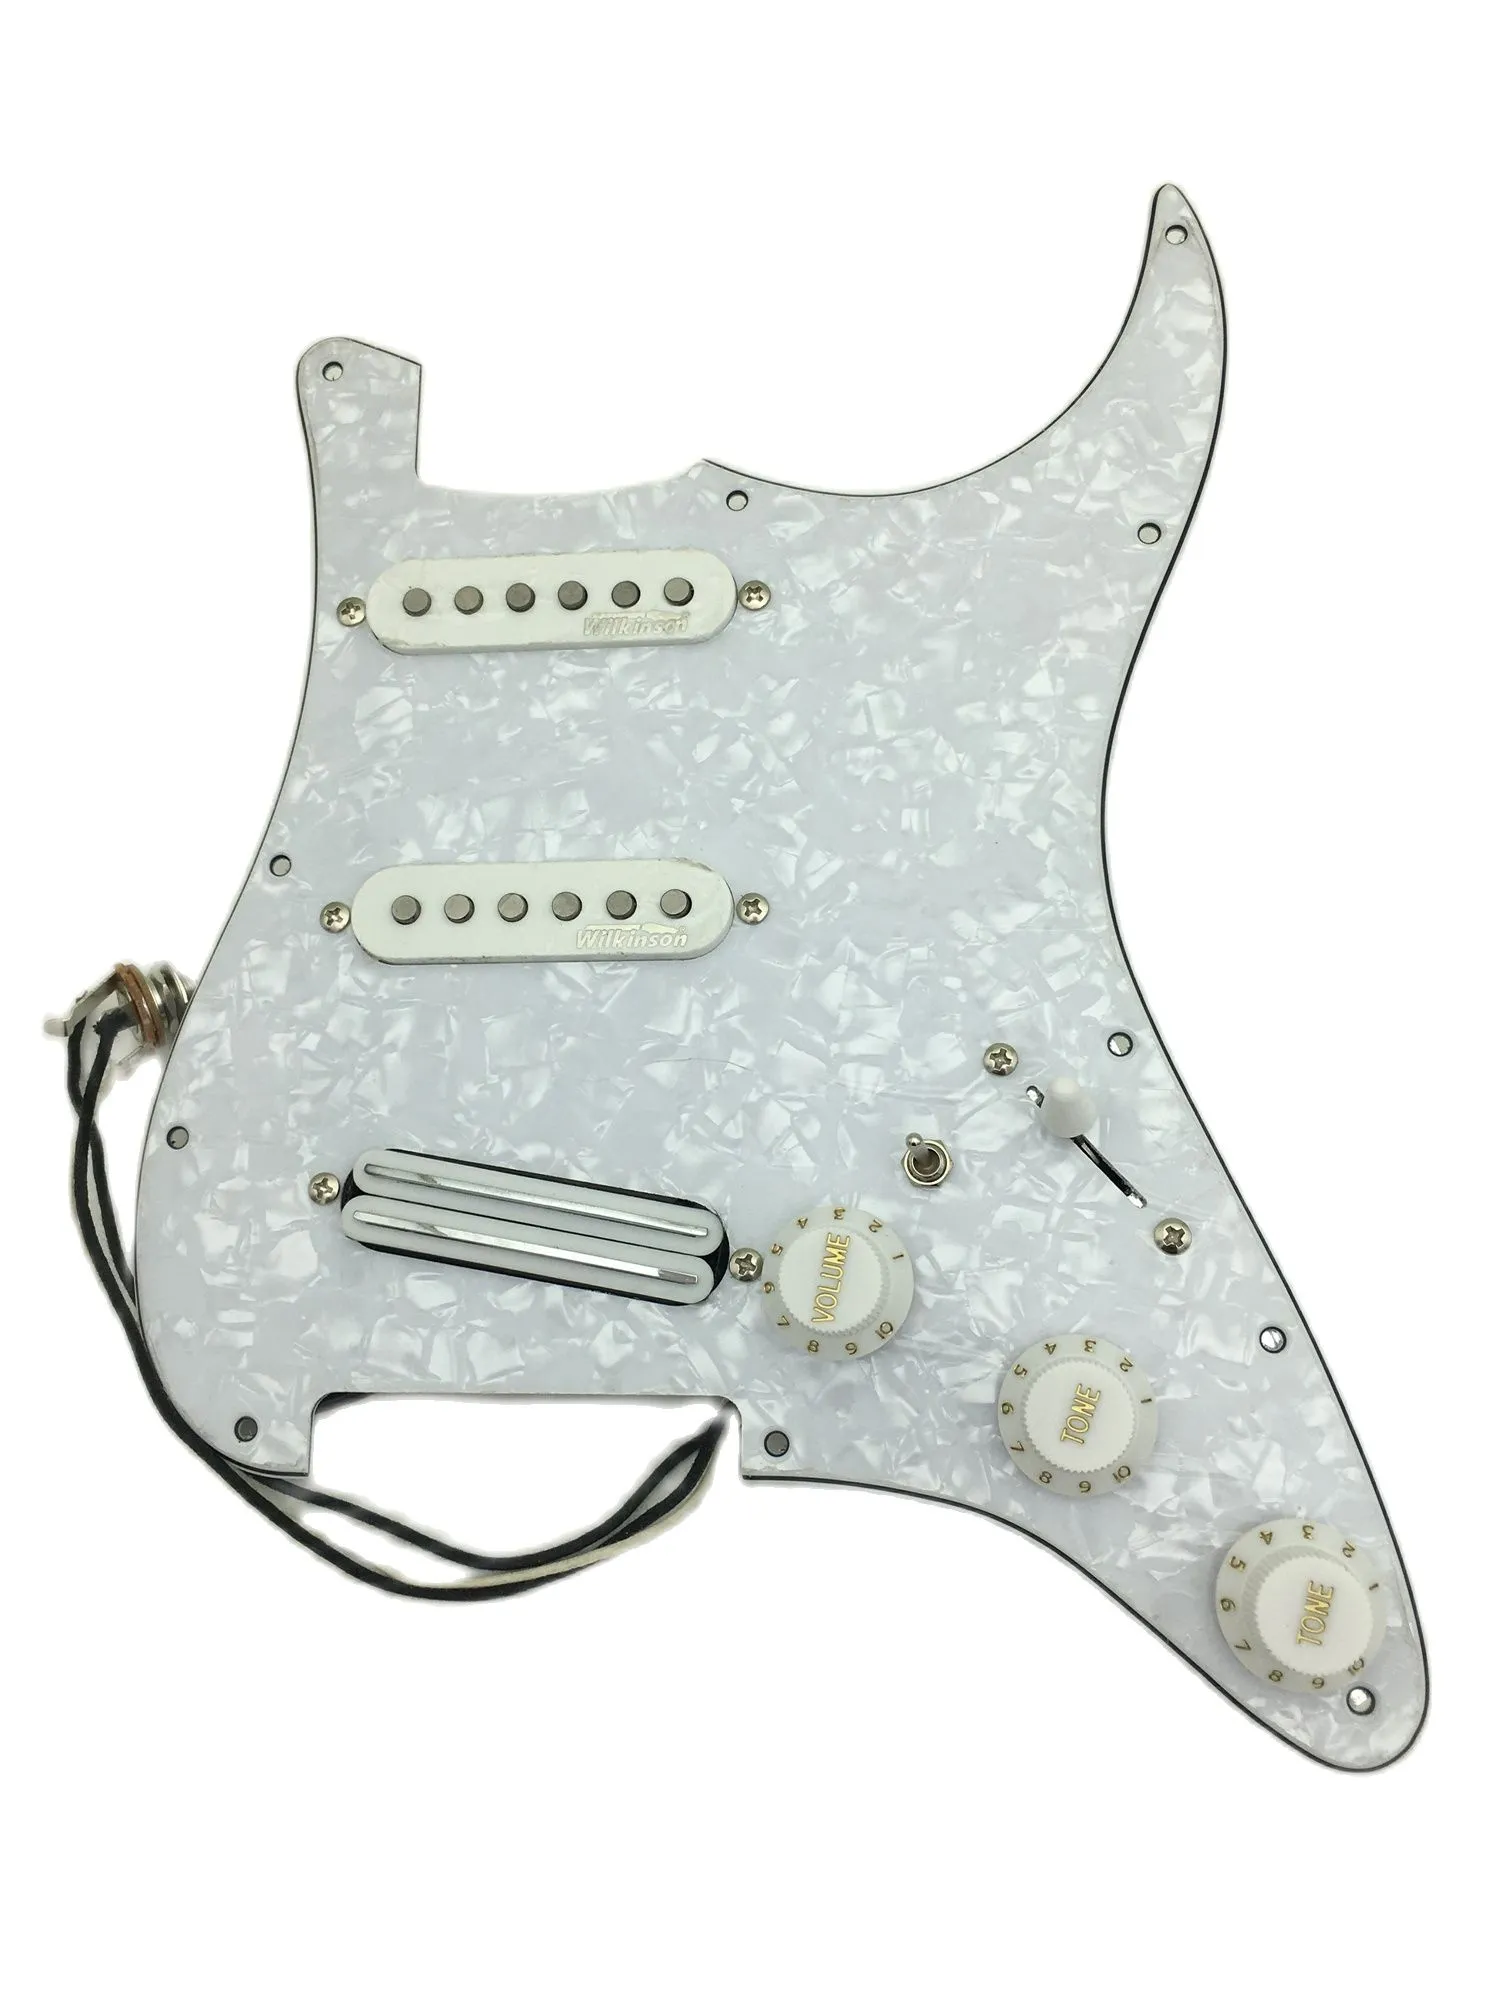 Ön kablolu pickguard sss beyaz wk alnico pikaplar 7 yollu anahtar çok işlevli kablo demeti gitar parçaları